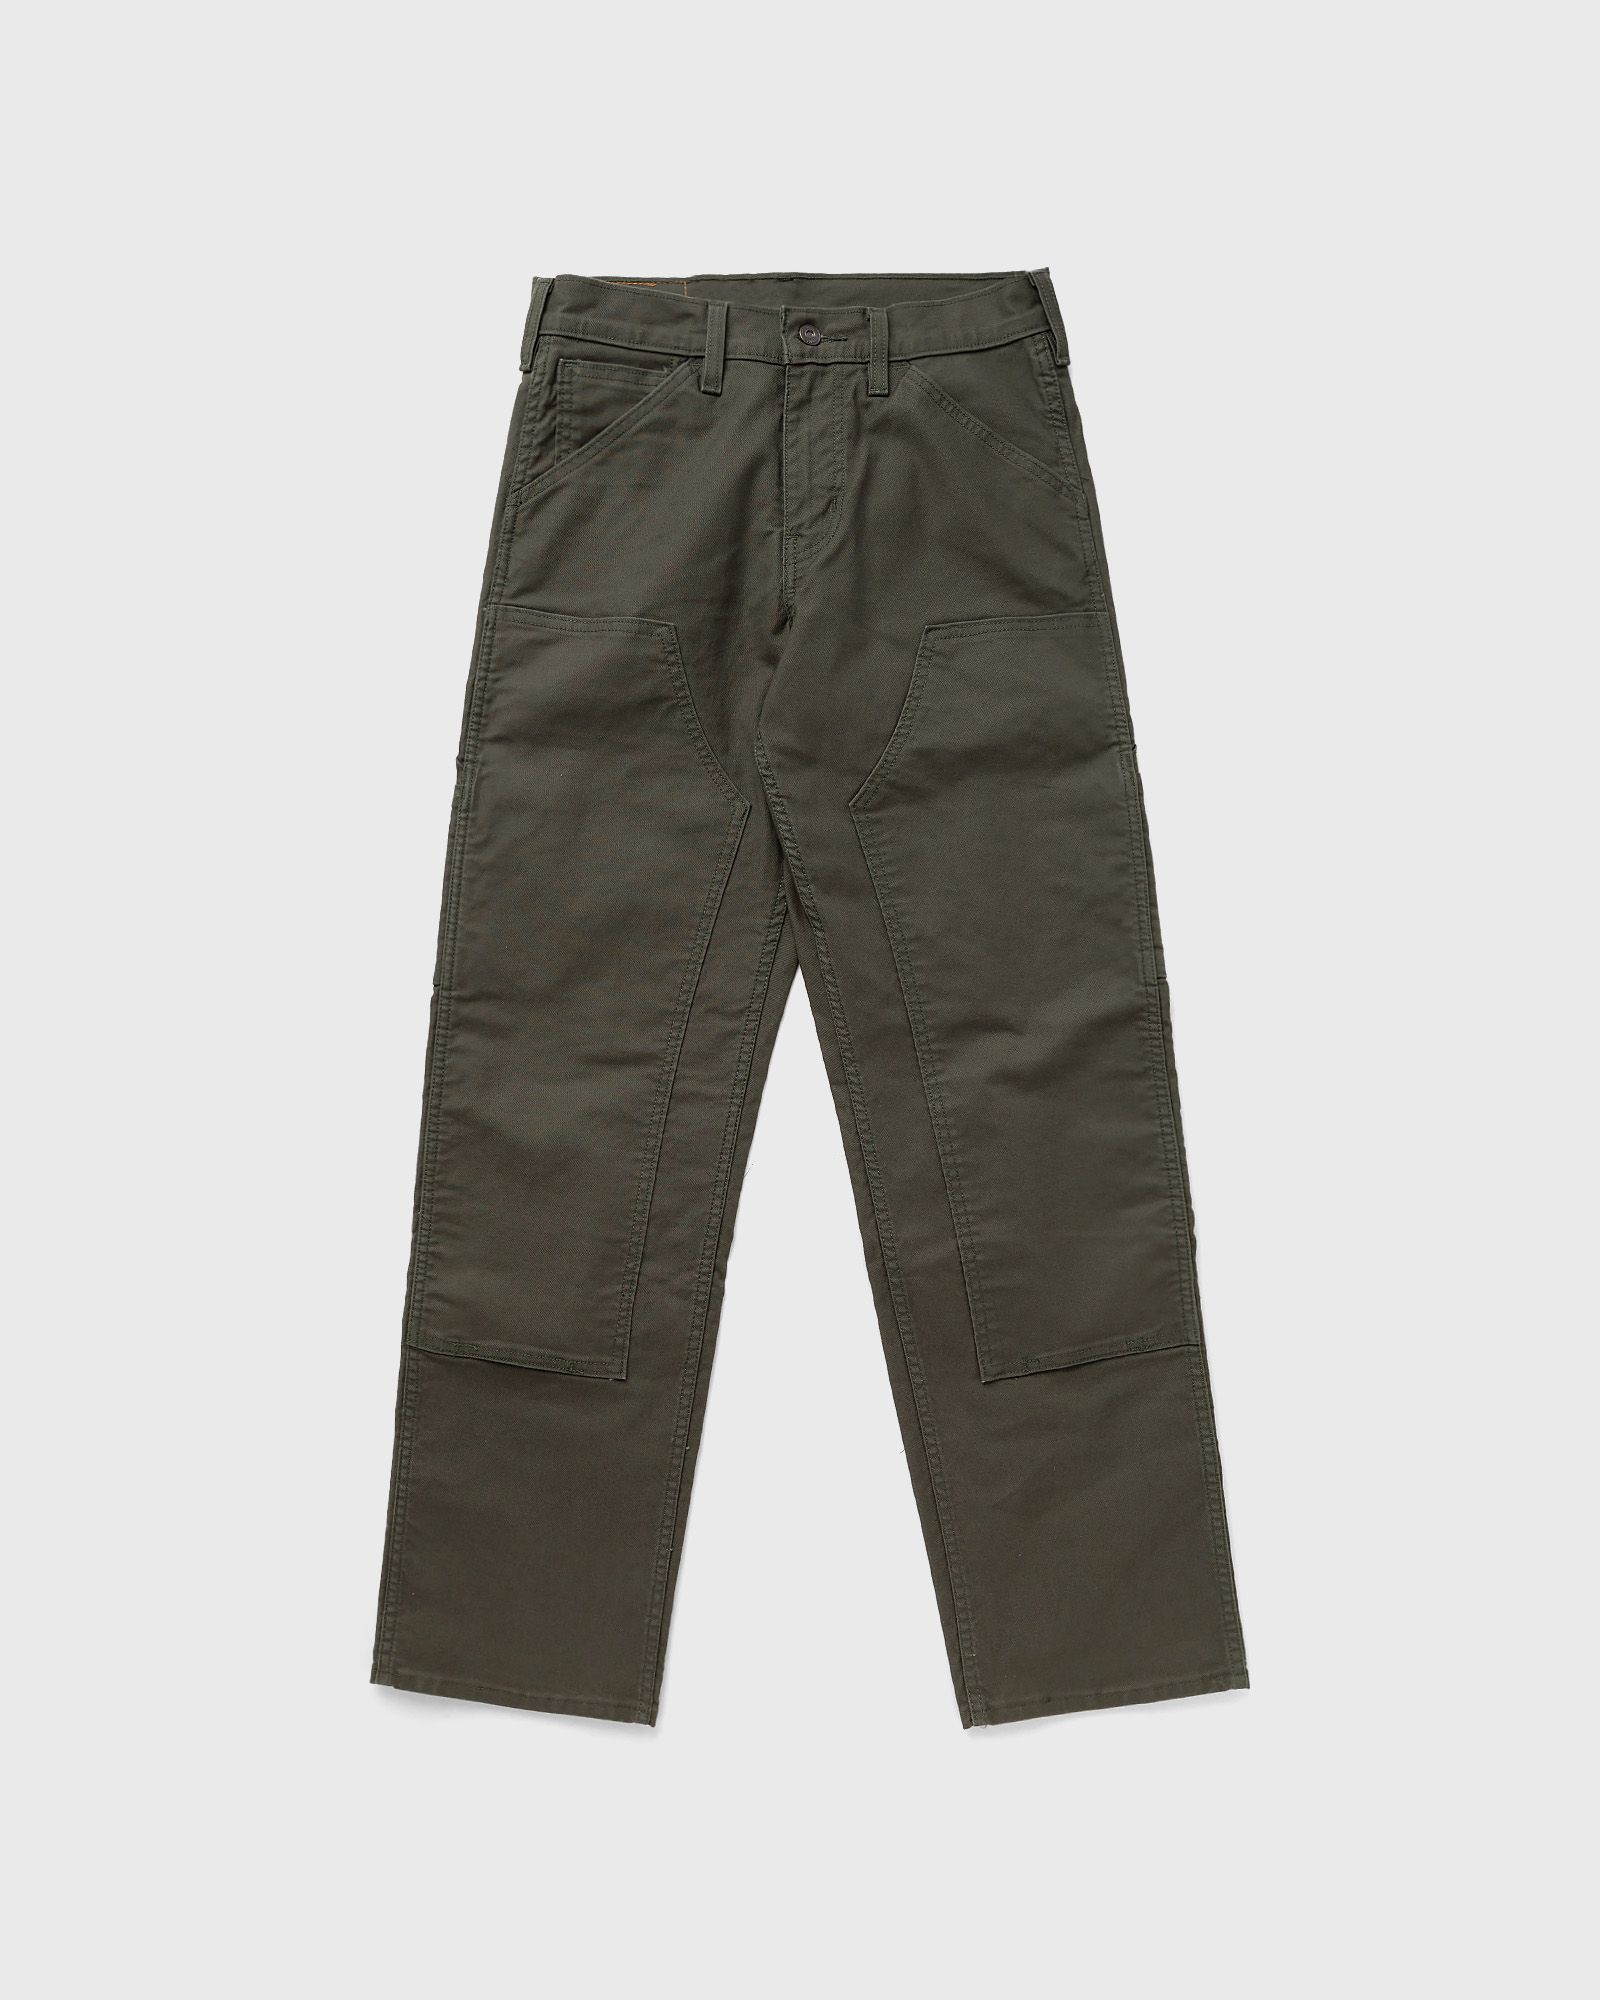 Levis - workwear 565 double knee men jeans green in größe:l